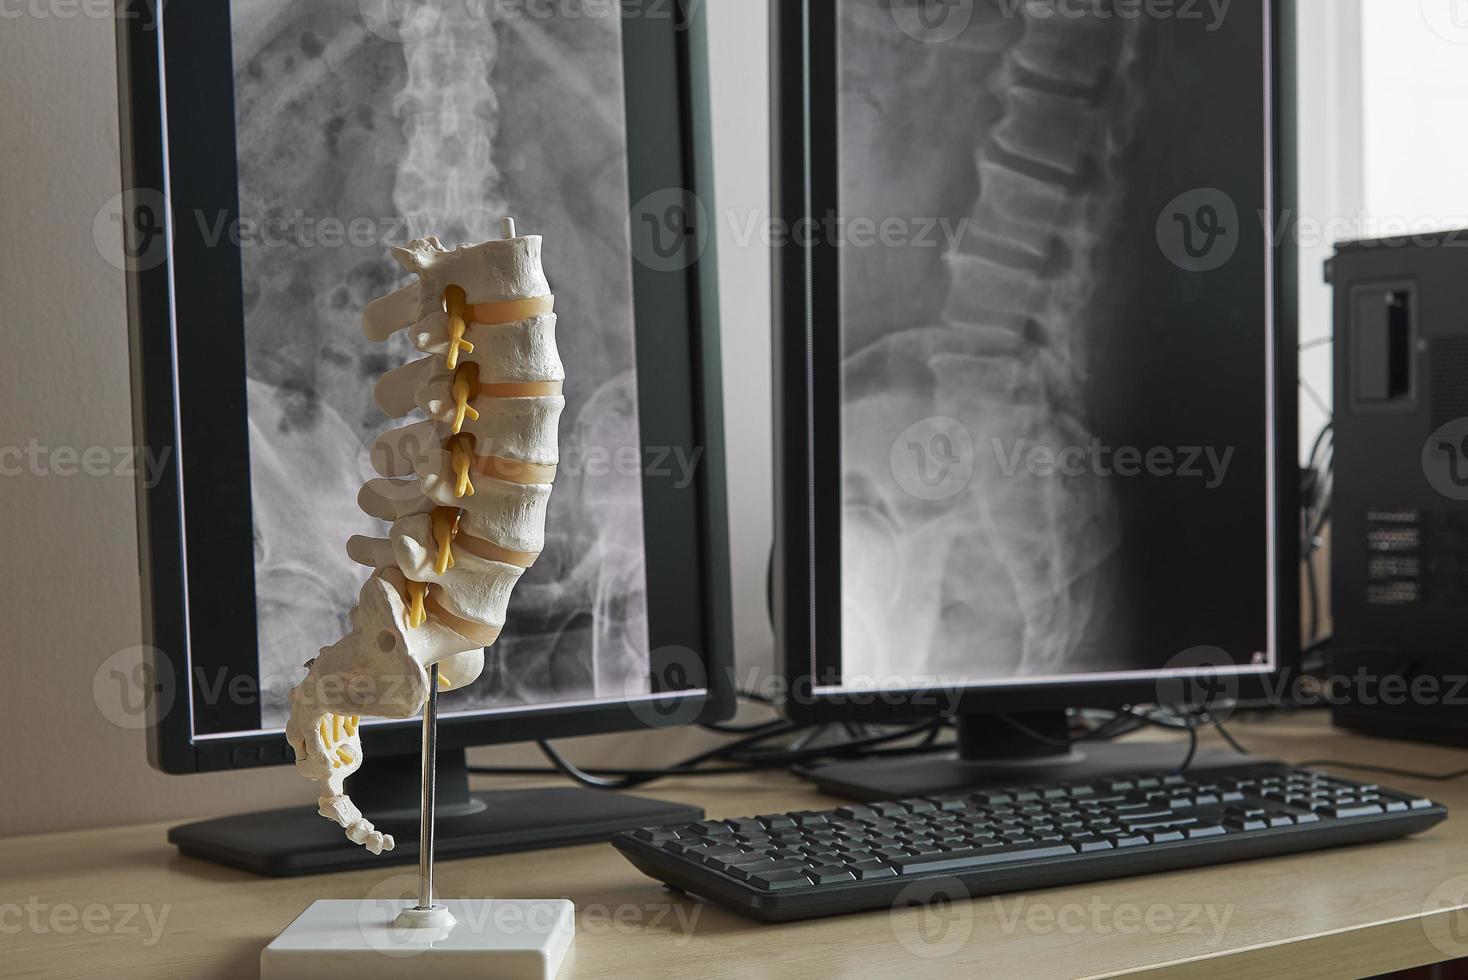 modelo de coluna lombar humana e fundo da coluna lombar de raios-x foto